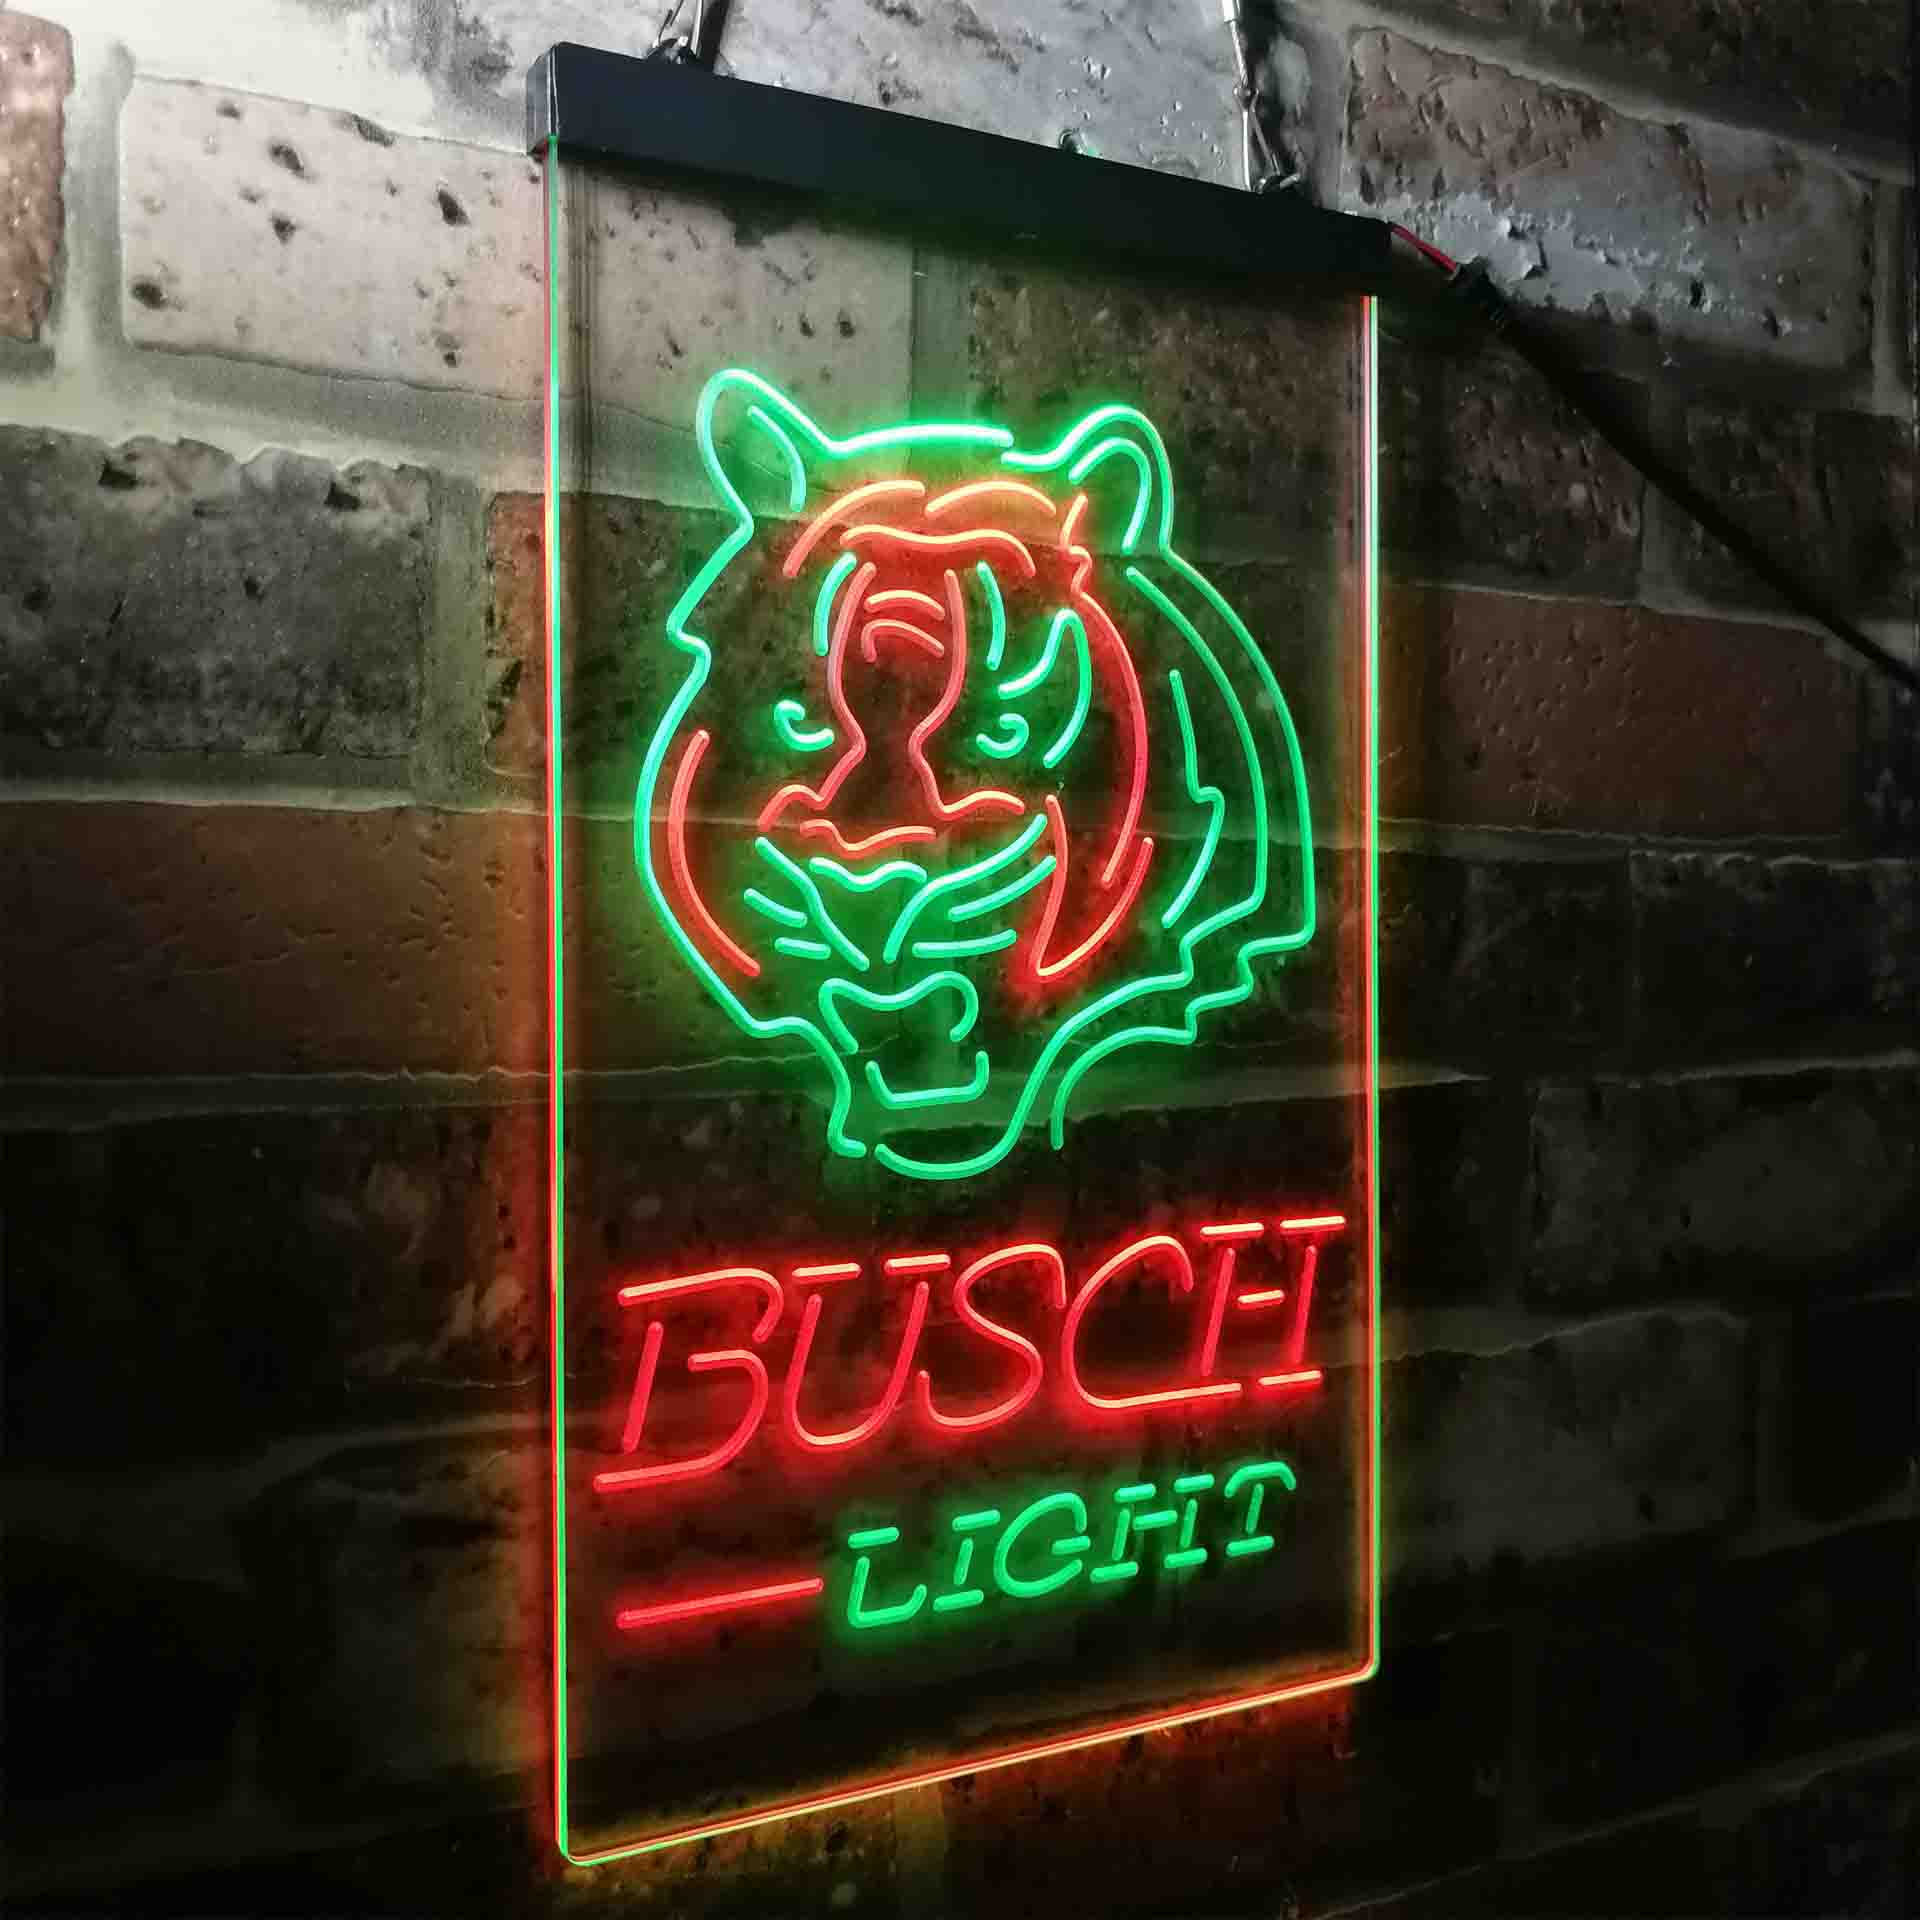 Sport Team Cincinnatis League Club Souvenir Fan Lamp Bengals LED Neon Sign